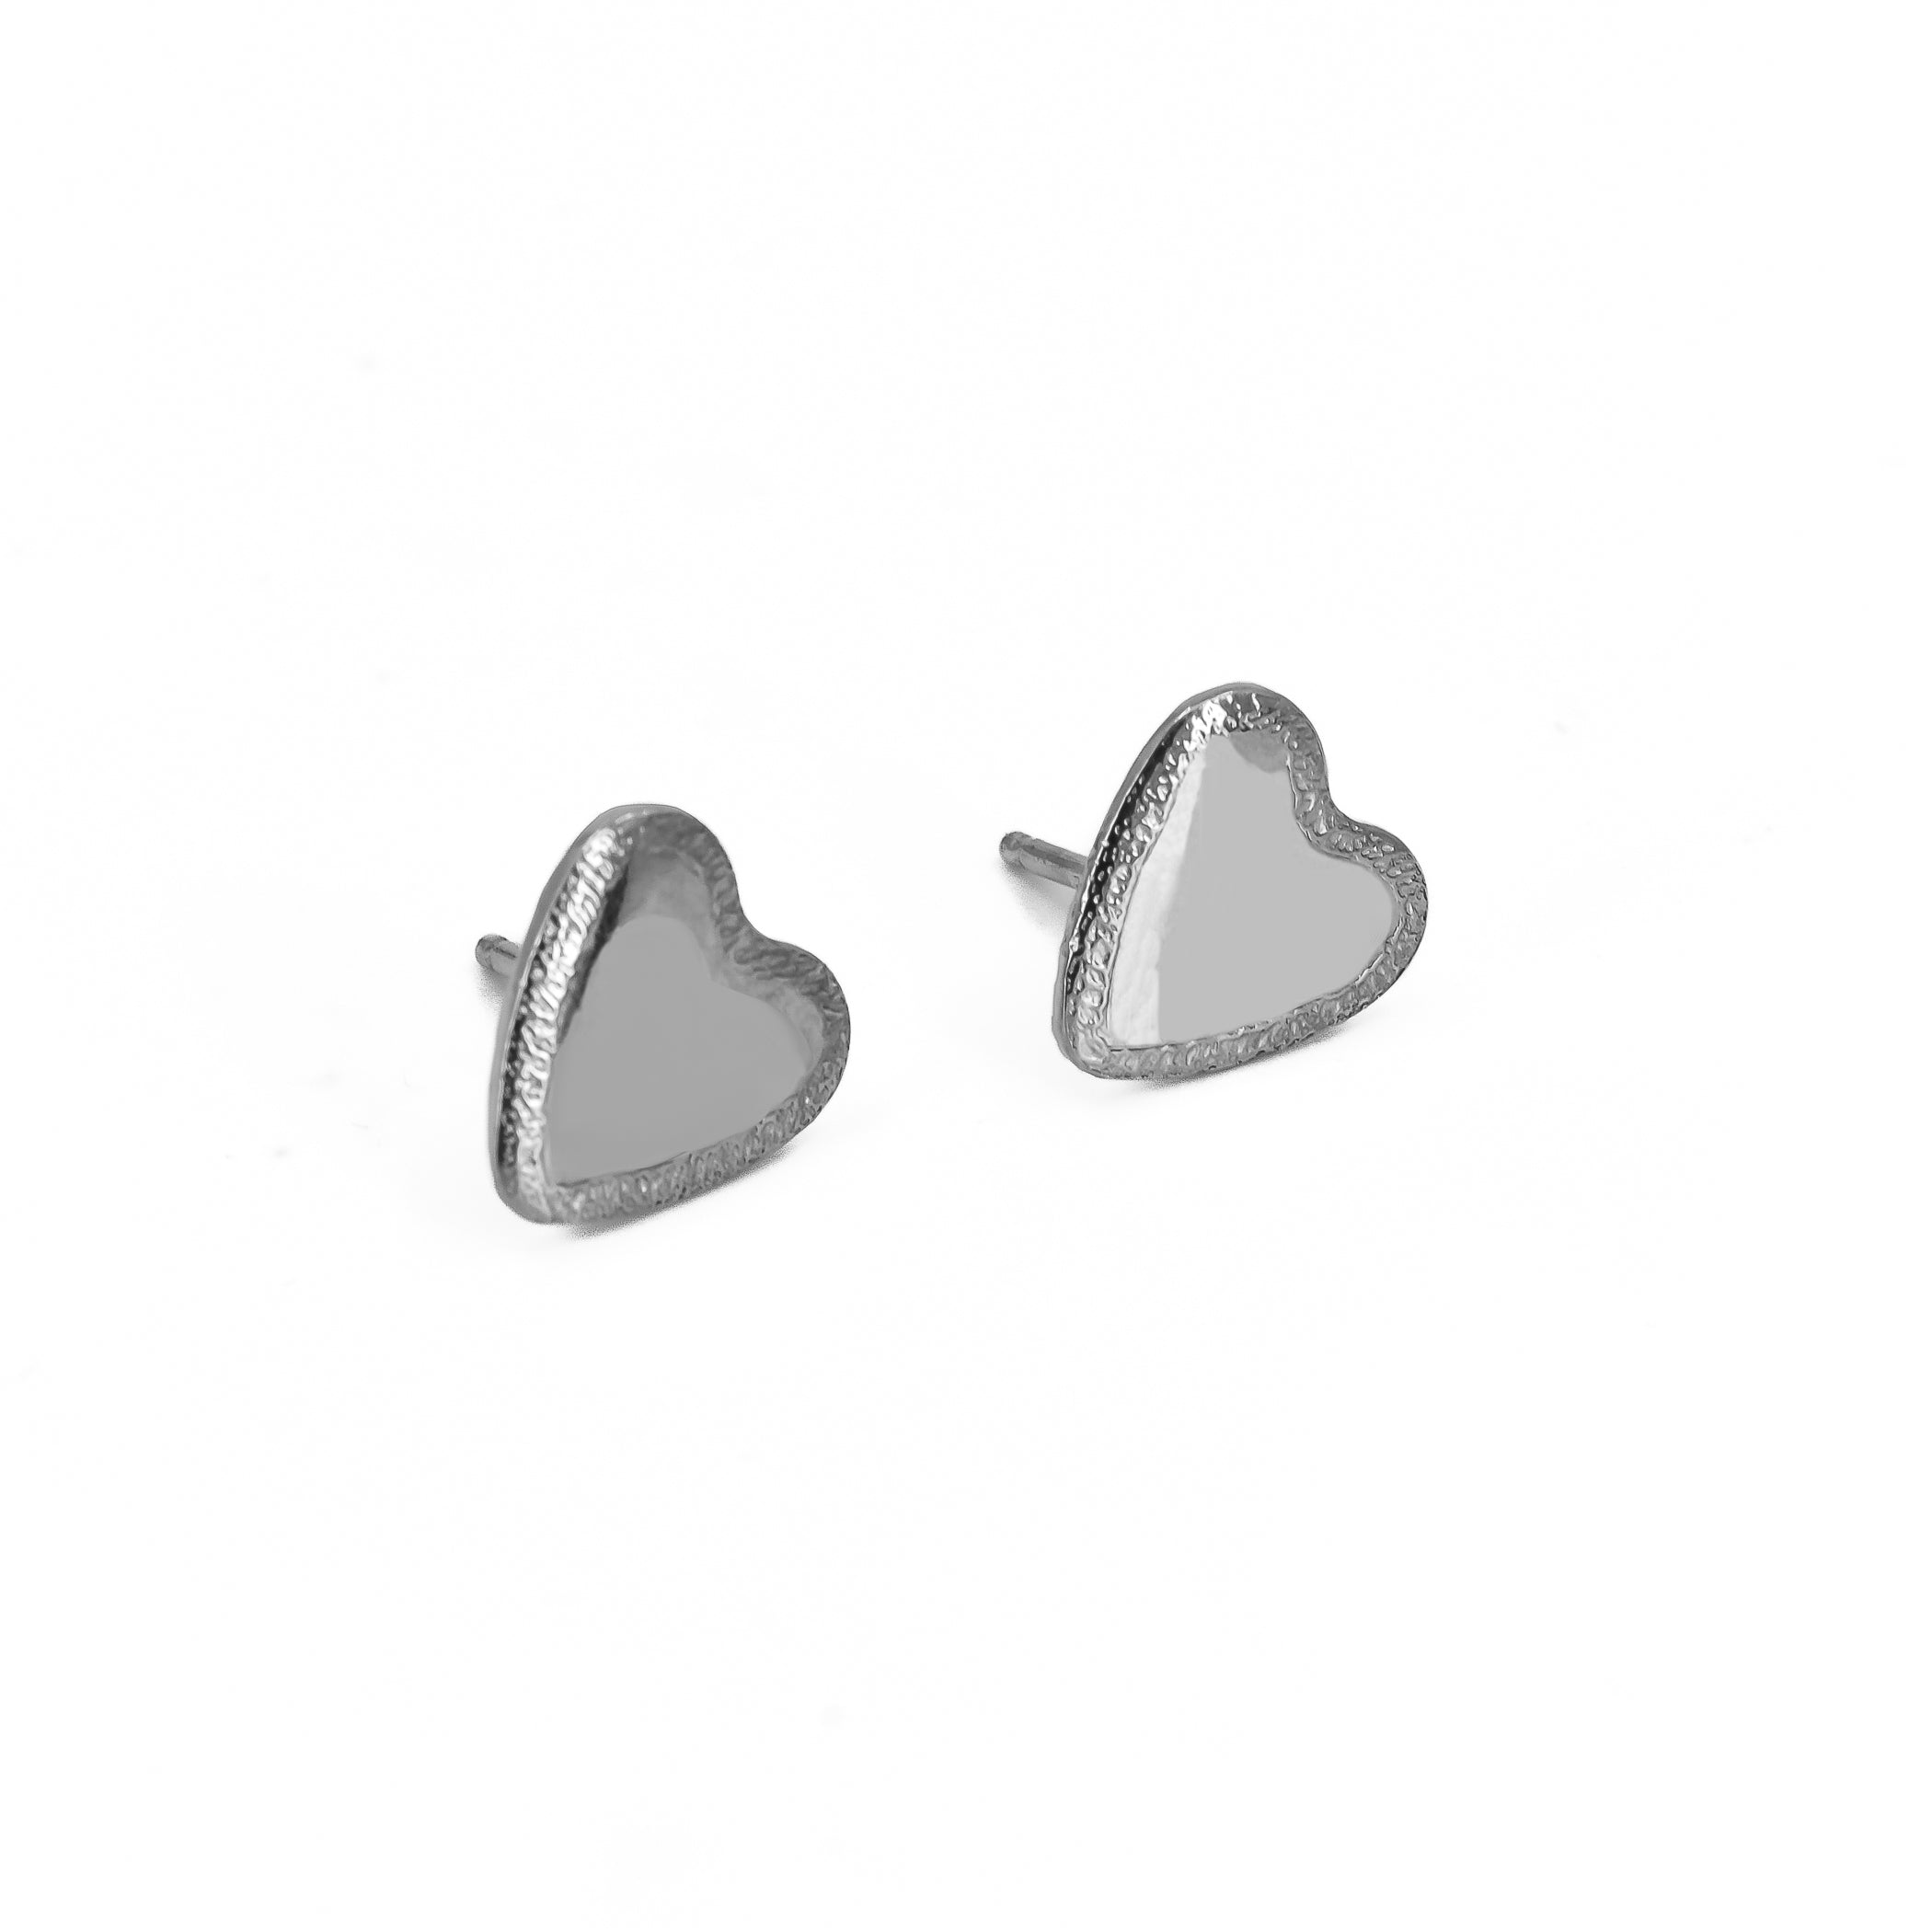 Stardust engraved heart studs earrings in sterling silver